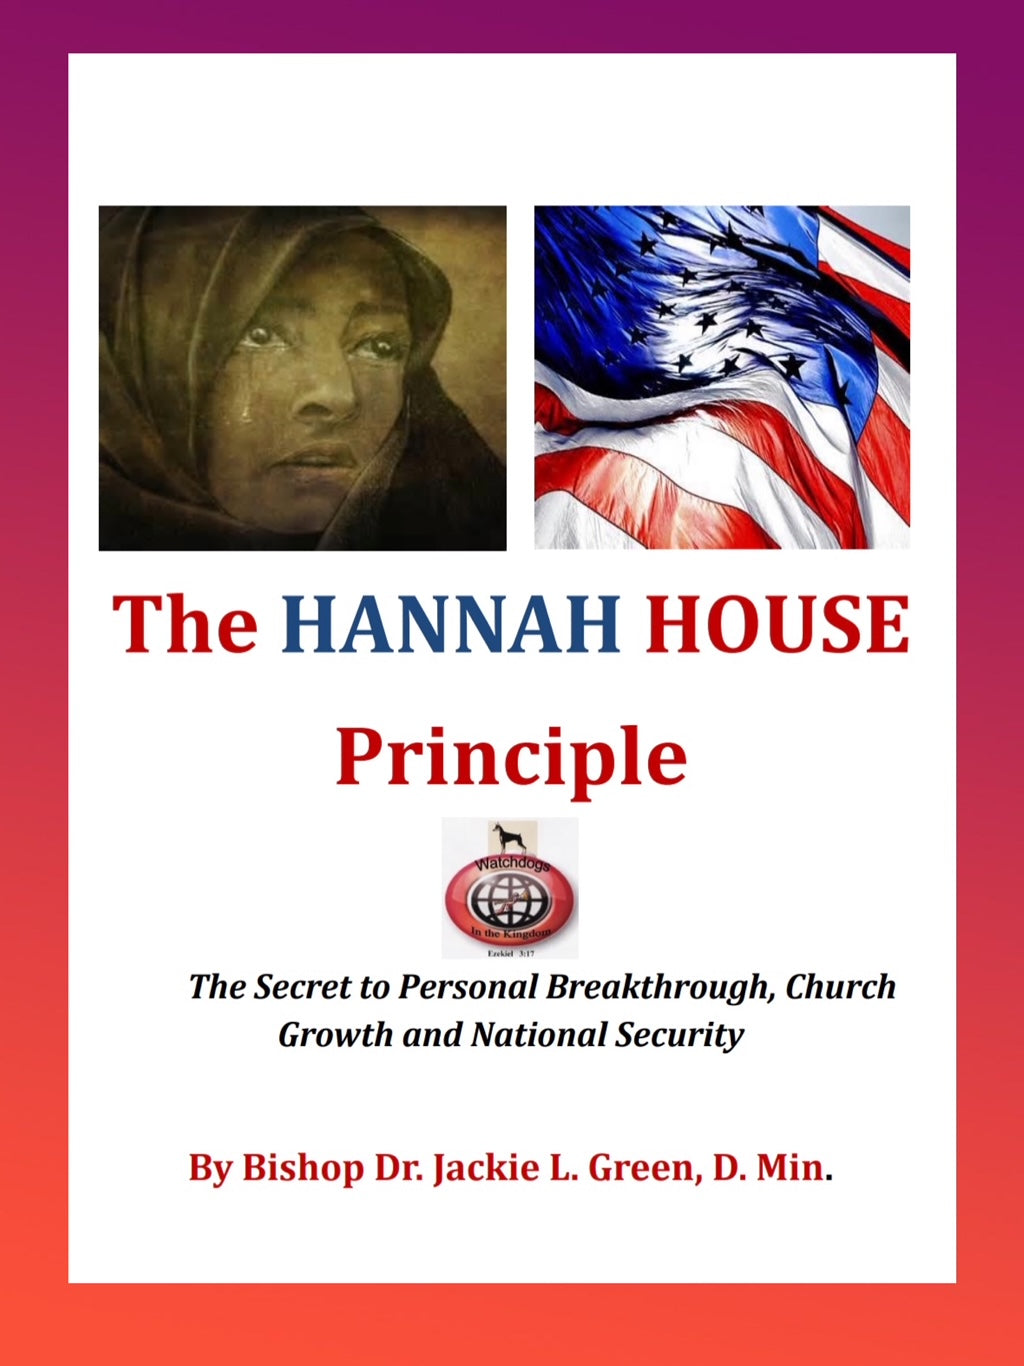 THE HANNAH HOUSE PRINCIPLE